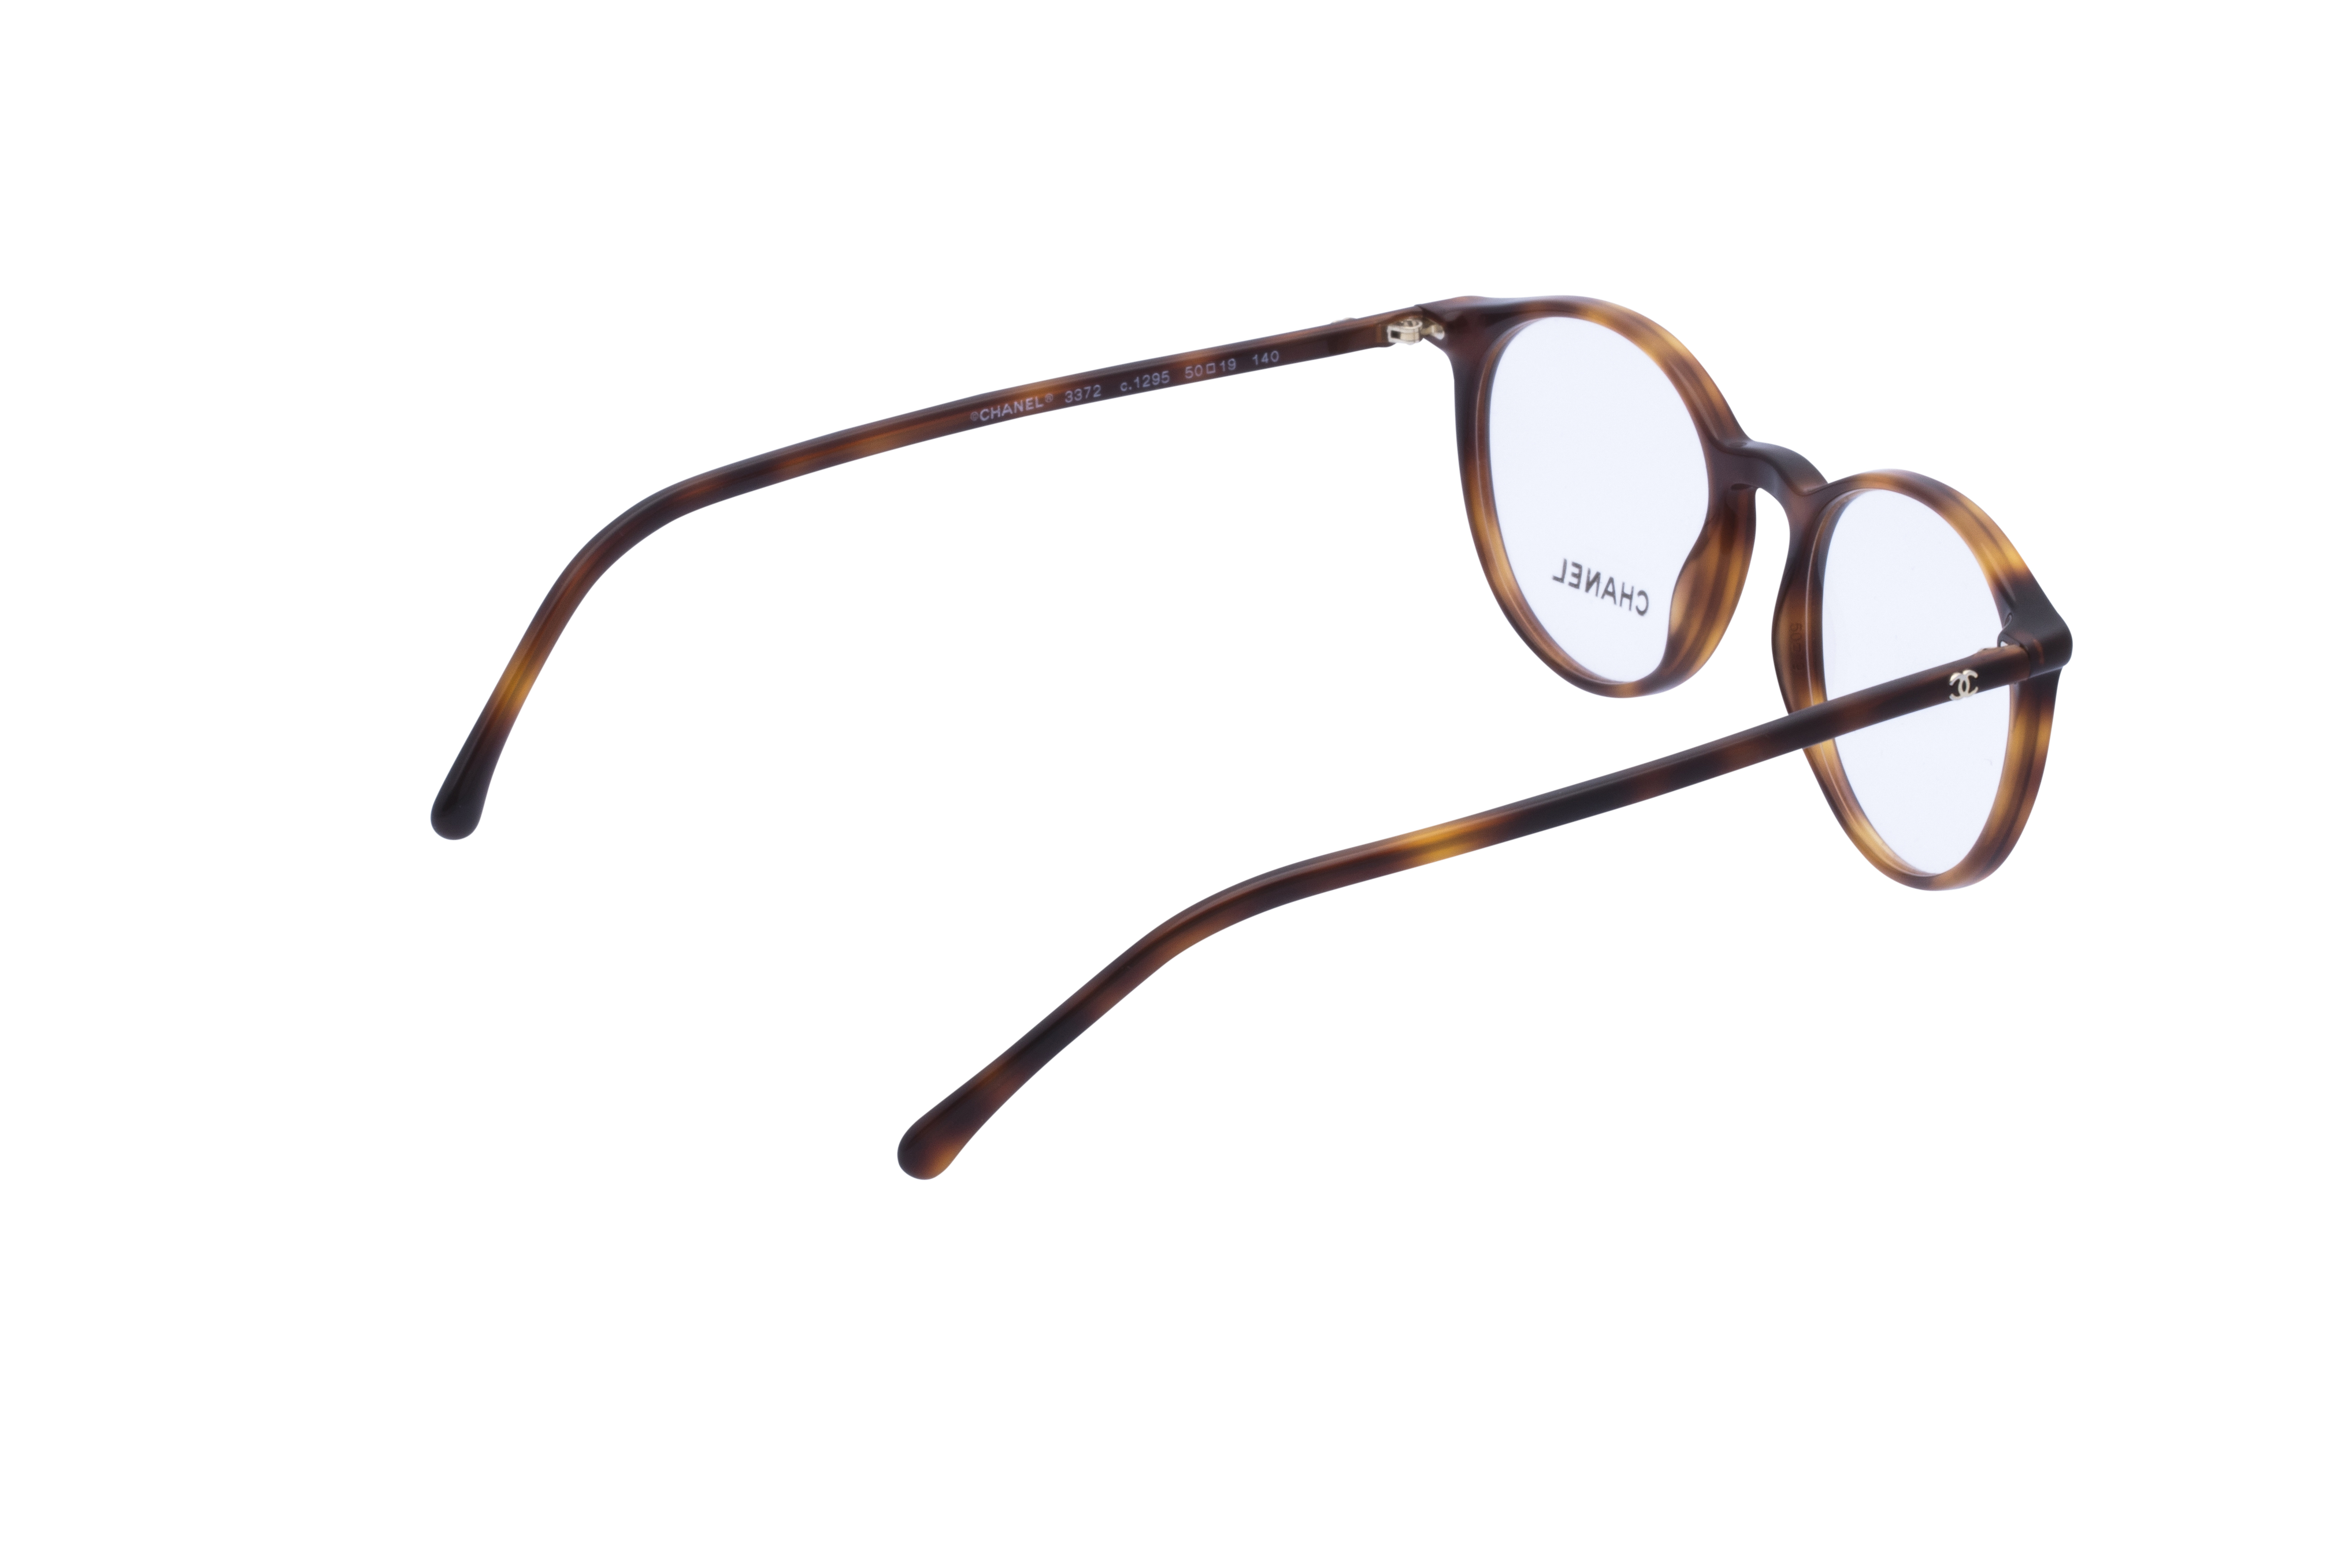 360 Grad Ansicht 8 Chanel 3372 Frontansicht, Brille auf Weiß - Fassung bei KUNK